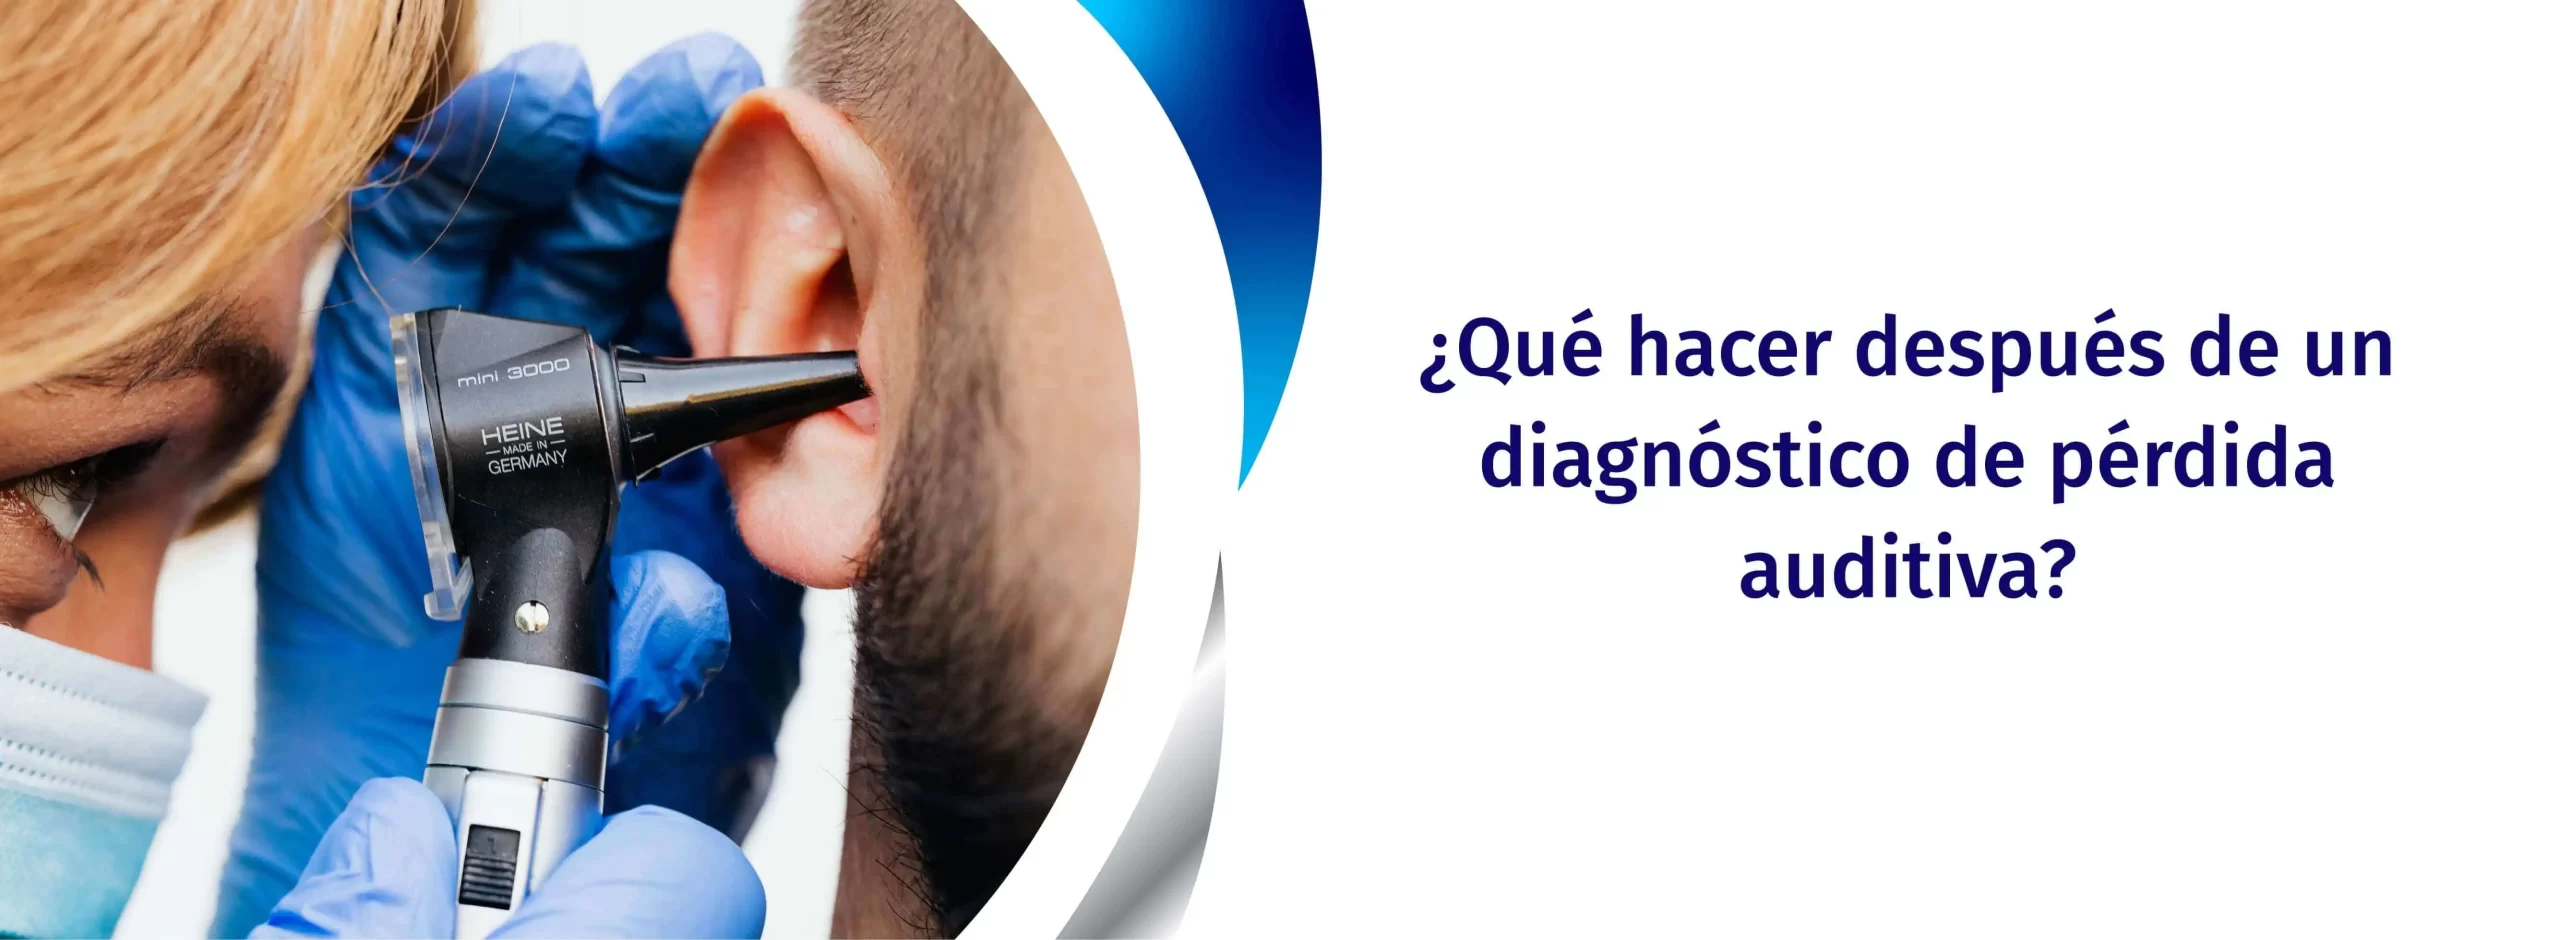 ¿Qué hacer después de un diagnóstico de pérdida auditiva?